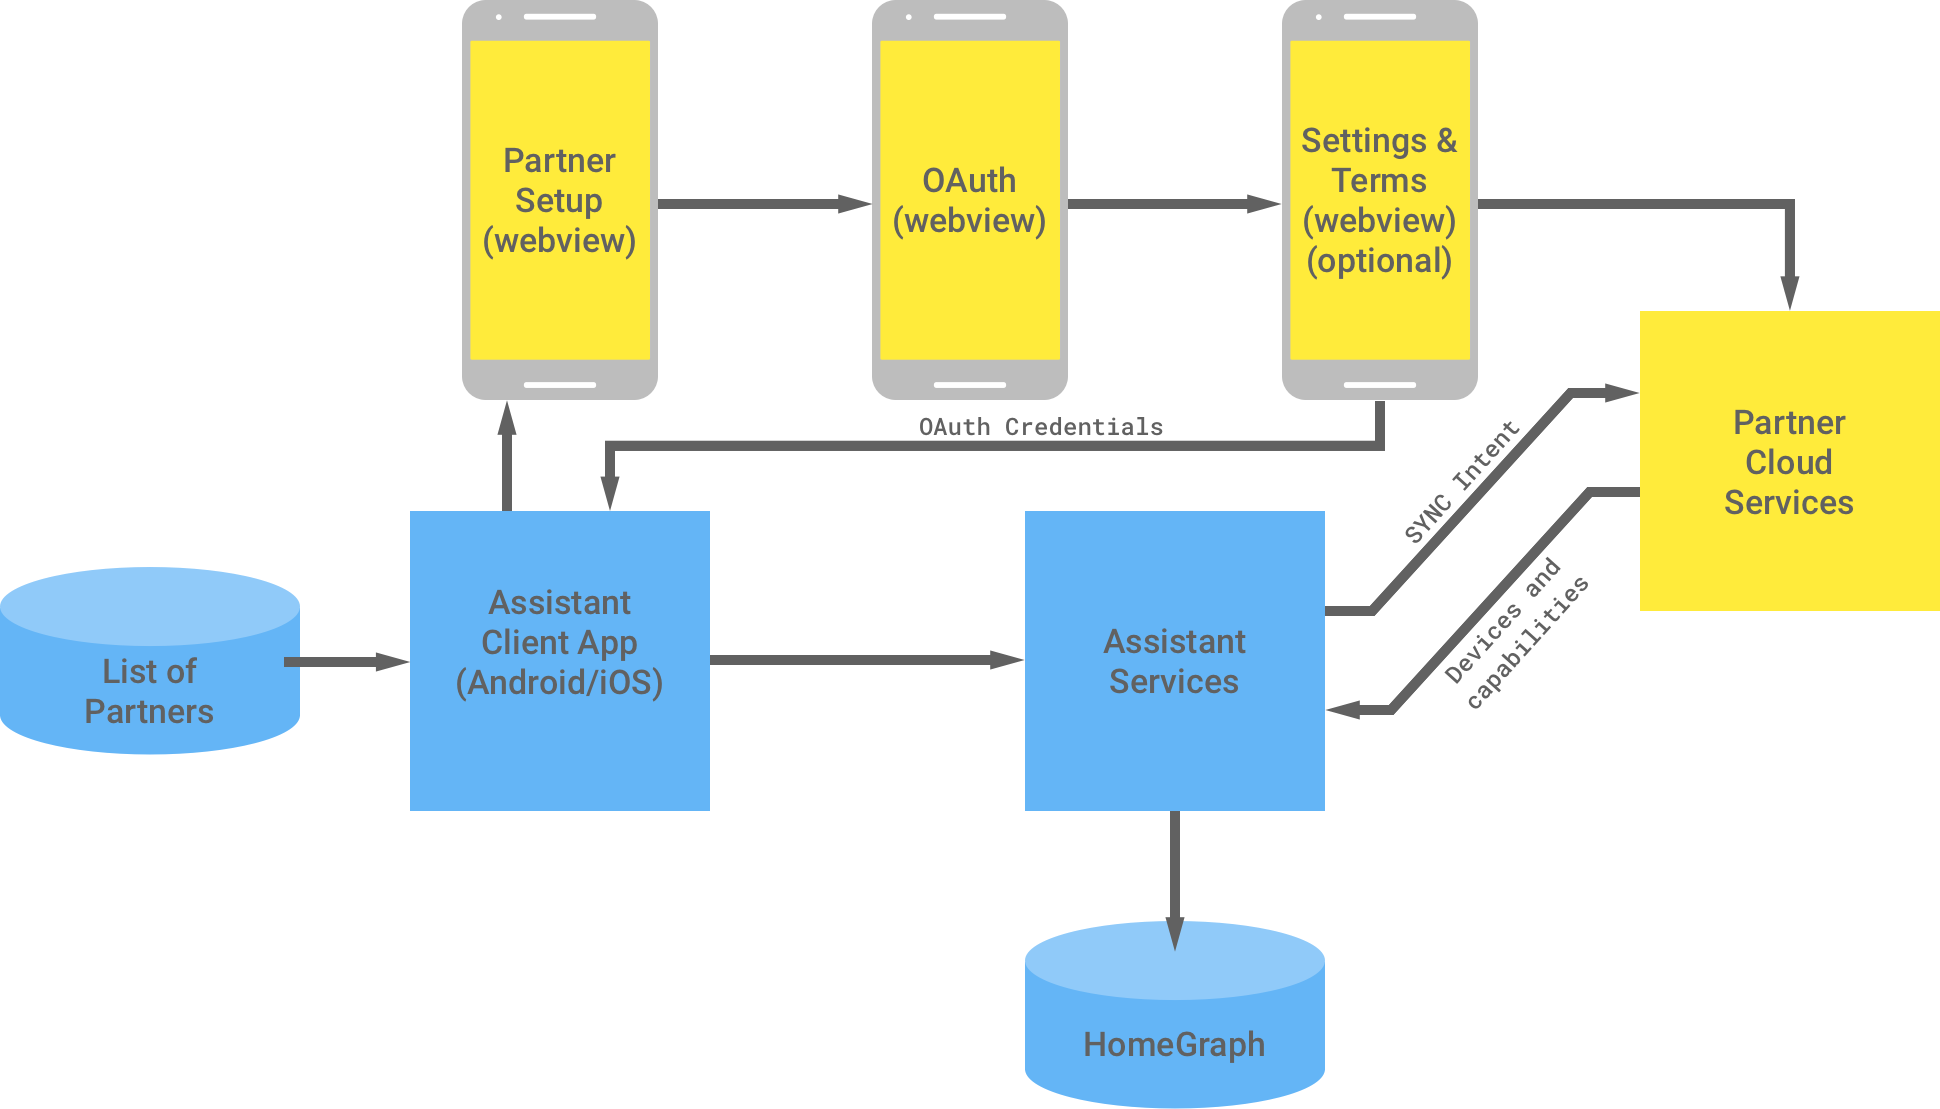 Ilustracja przedstawiająca interakcję między infrastrukturą Google i infrastrukturą partnera. Z infrastruktury Google można korzystać z listy partnerów, w których dostępna jest aplikacja kliencka Asystenta, a potem trafiająca do infrastruktury partnera, aby dokończyć uwierzytelnianie OAuth. Uwierzytelnianie OAuth po stronie partnera obejmuje konfigurację komponentu WebView partnera, komponent WebView protokołu OAuth, opcjonalne ustawienia i warunki oraz usługi w chmurze dla partnerów. Następnie infrastruktura partnera zwraca dane logowania OAuth do aplikacji klienckiej Asystenta. Usługi w chmurze partnera wysyłają do usług Asystenta dostępne urządzenia i możliwości, które zapisują informacje na wykresie głównym.